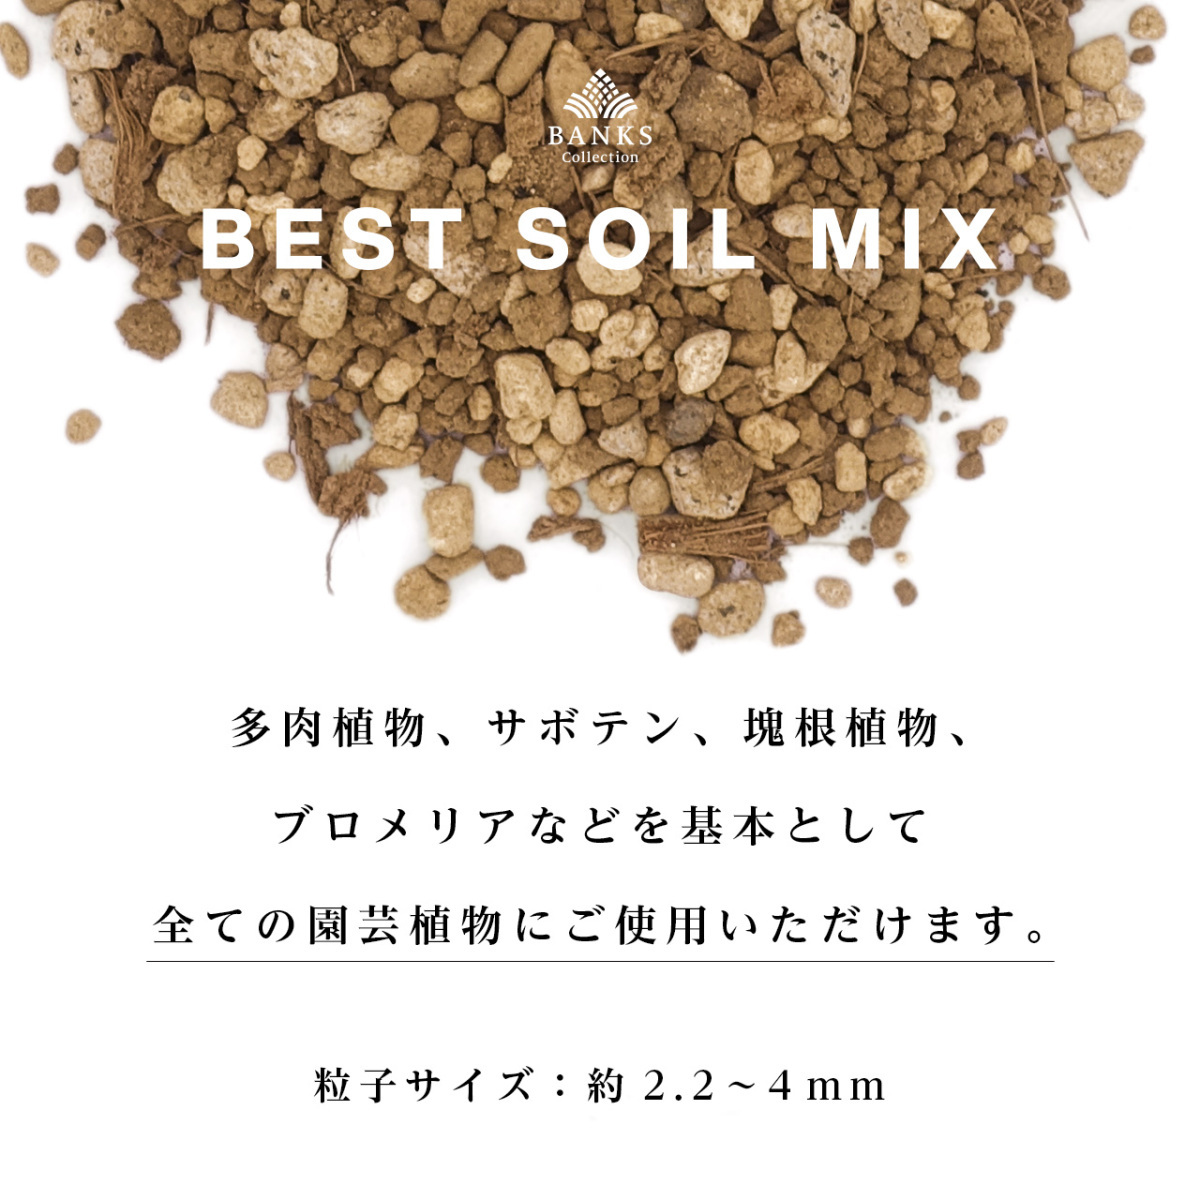 BSM3 the best soi Lumix 3L1 sack Best Soil Mix banks collection decorative plant for potting soil 